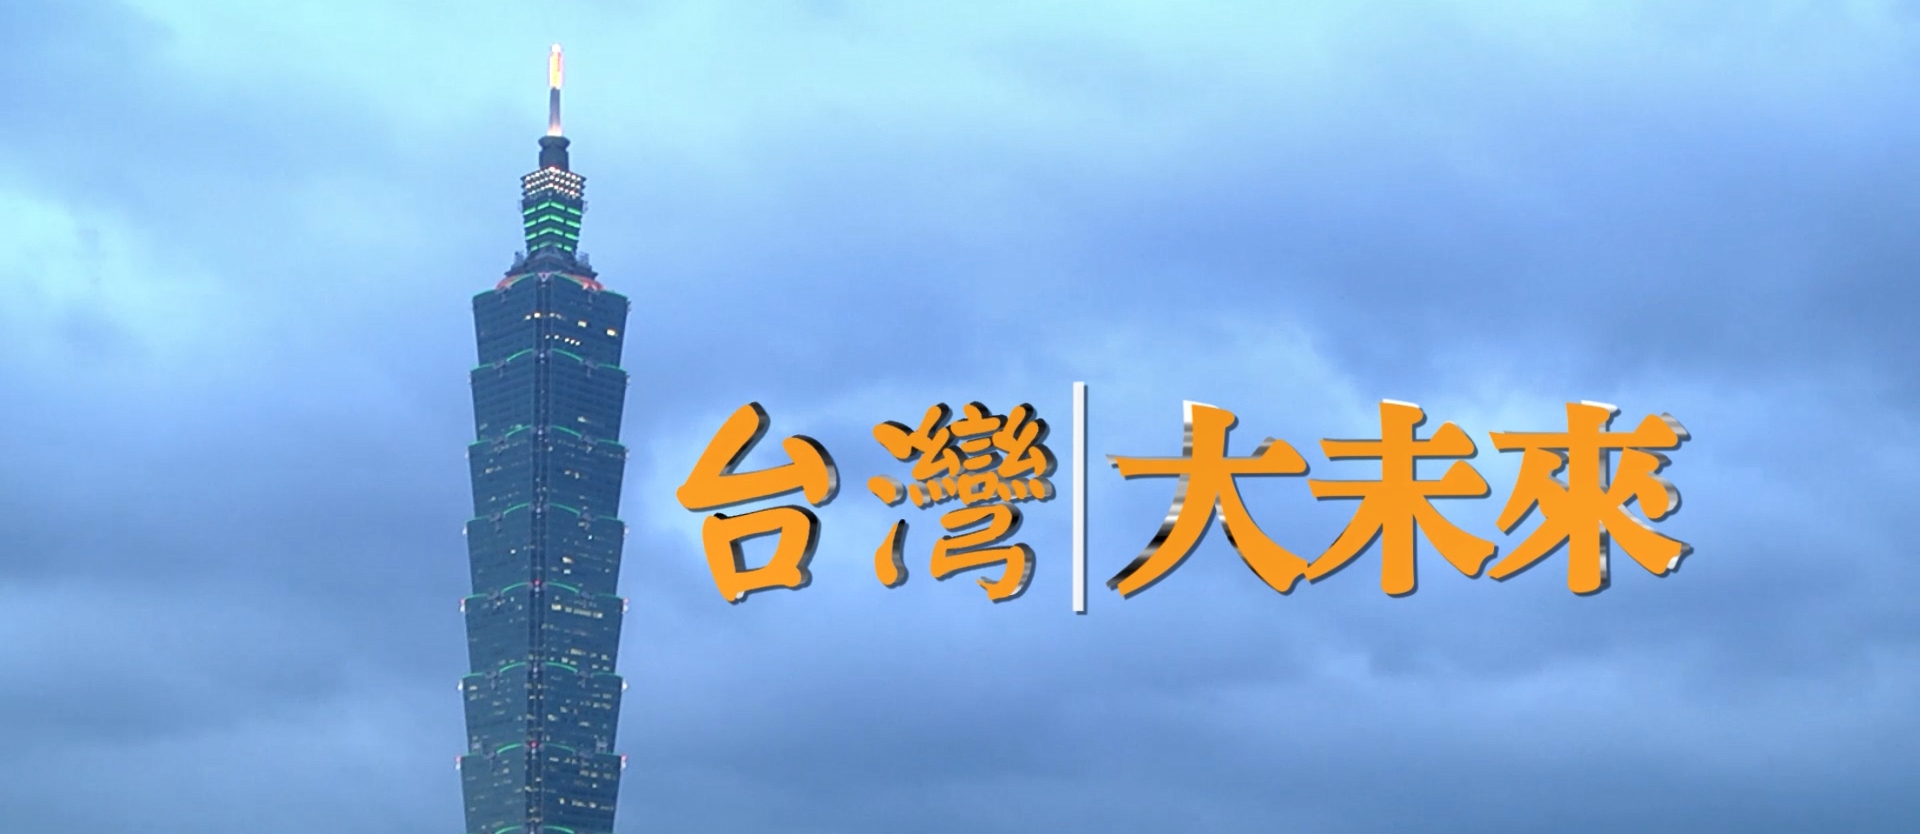 台湾非凡新闻台『台湾大未来』~环旭电子满足客户不同需求 坚守为客户创造新兴价值的承诺